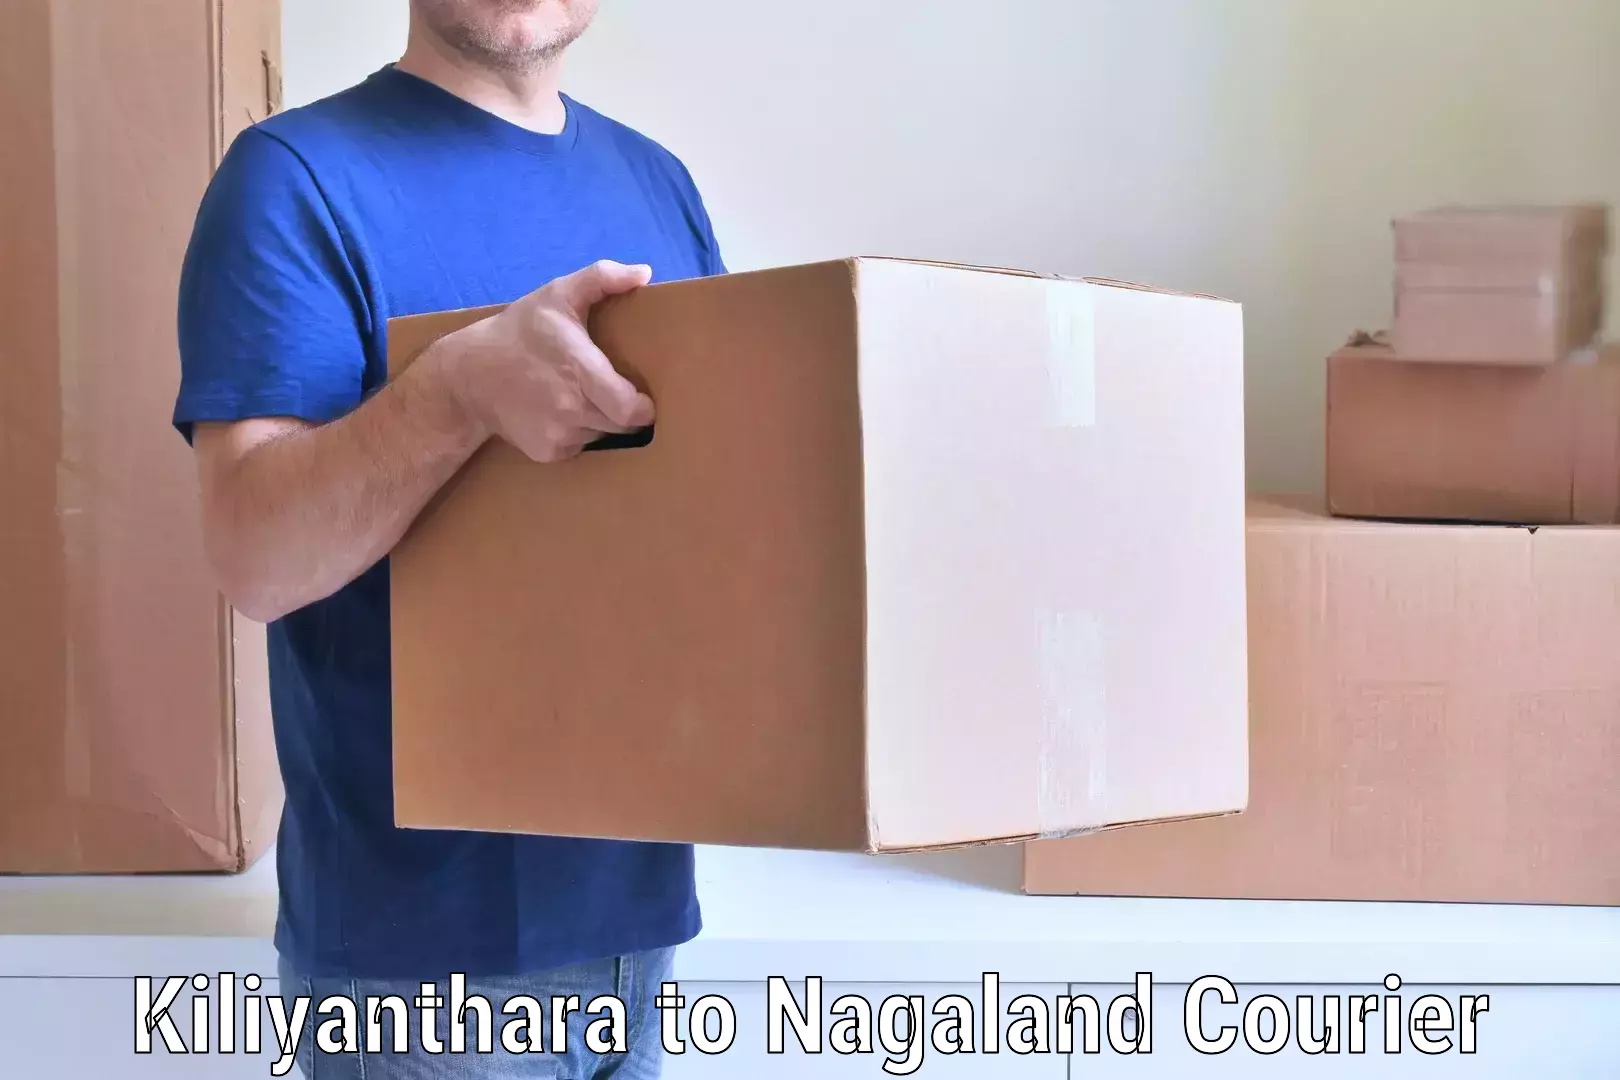 Efficient moving company Kiliyanthara to Nagaland